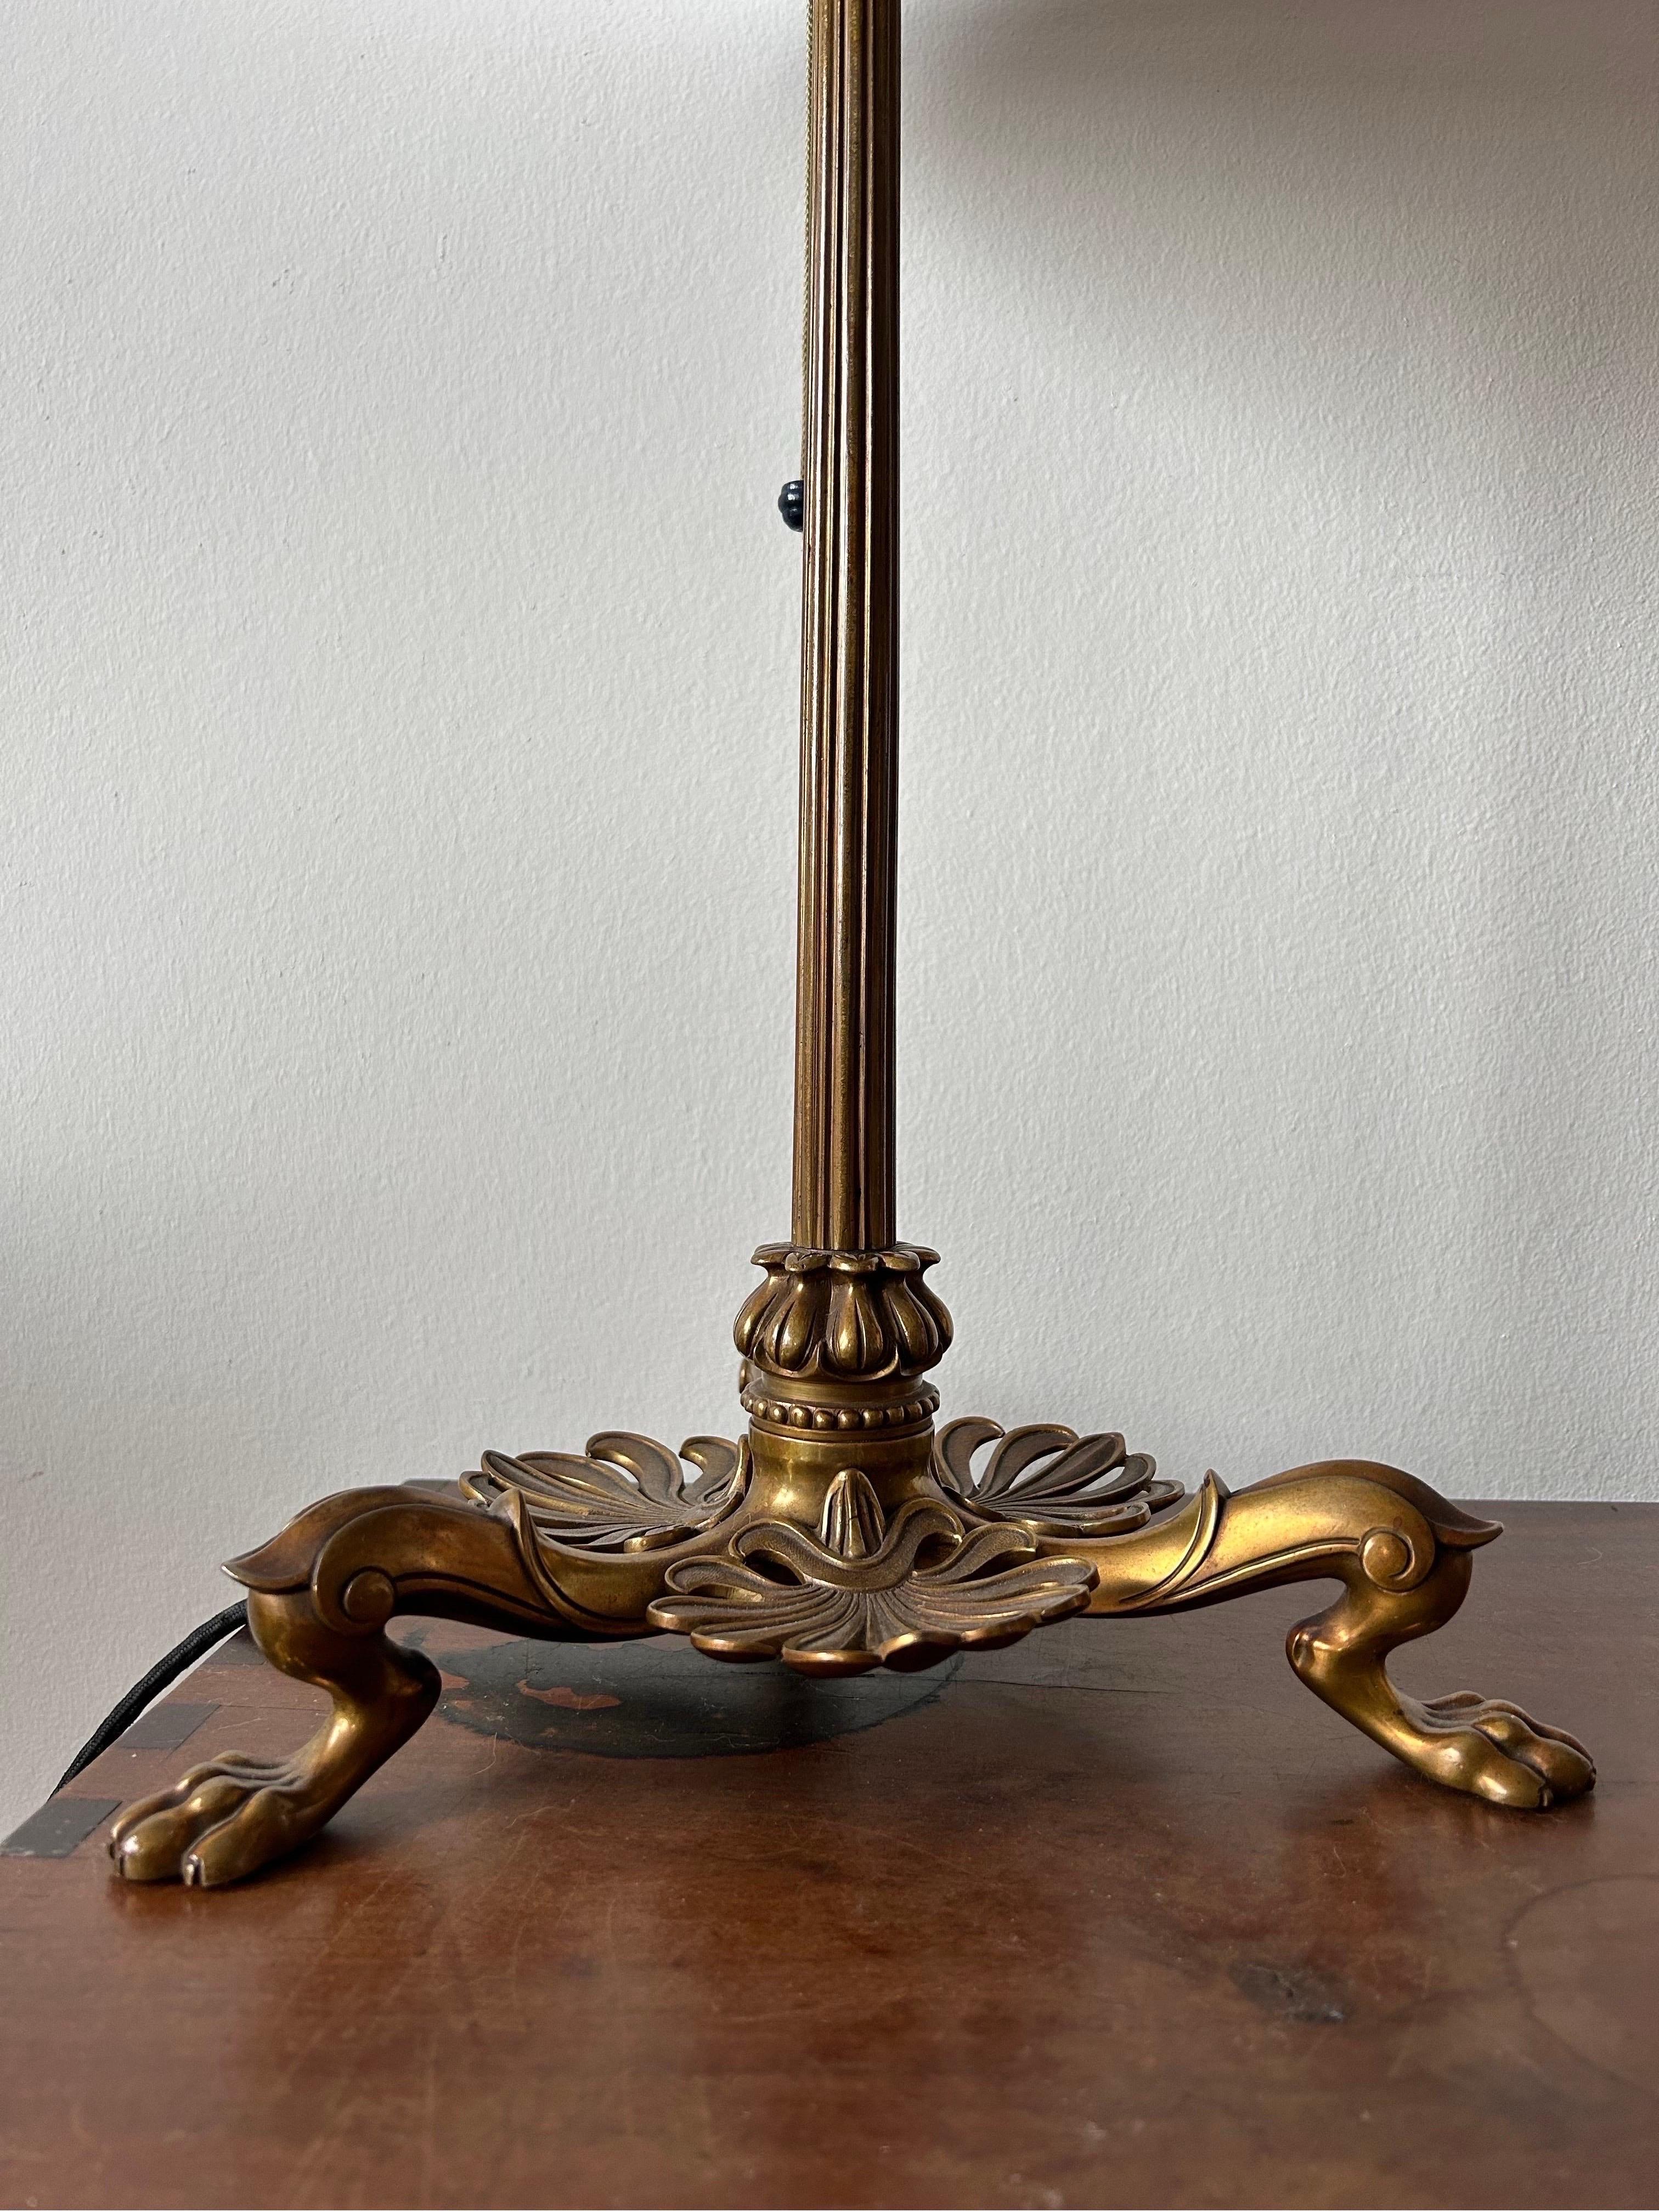 Rare lampe de table en bronze de Martin Gottlib Bindesbøll, fabriquée au Danemark dans les années 1850. Véritable témoignage de l'artisanat scandinave, cette lampe met en valeur l'esthétique du design renommé de Bindesbøll et l'attention portée aux